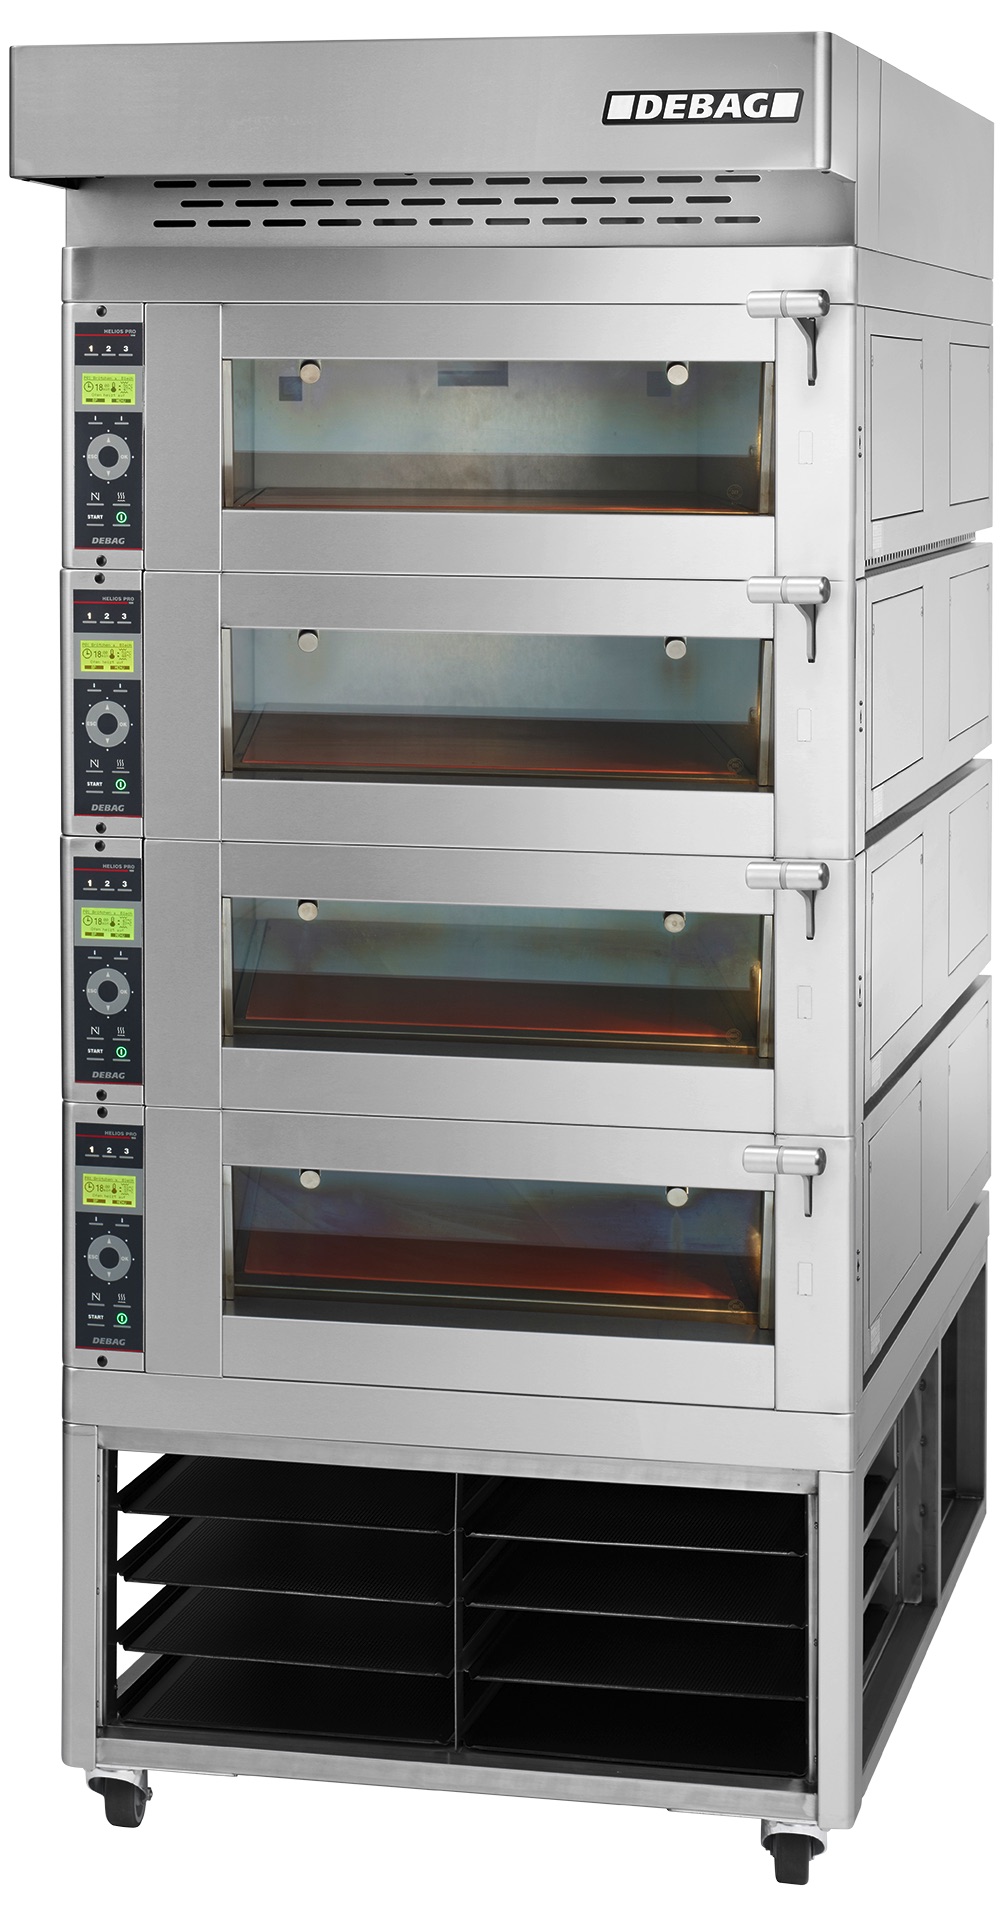 Debag Bakery Rack Ovens: Helios